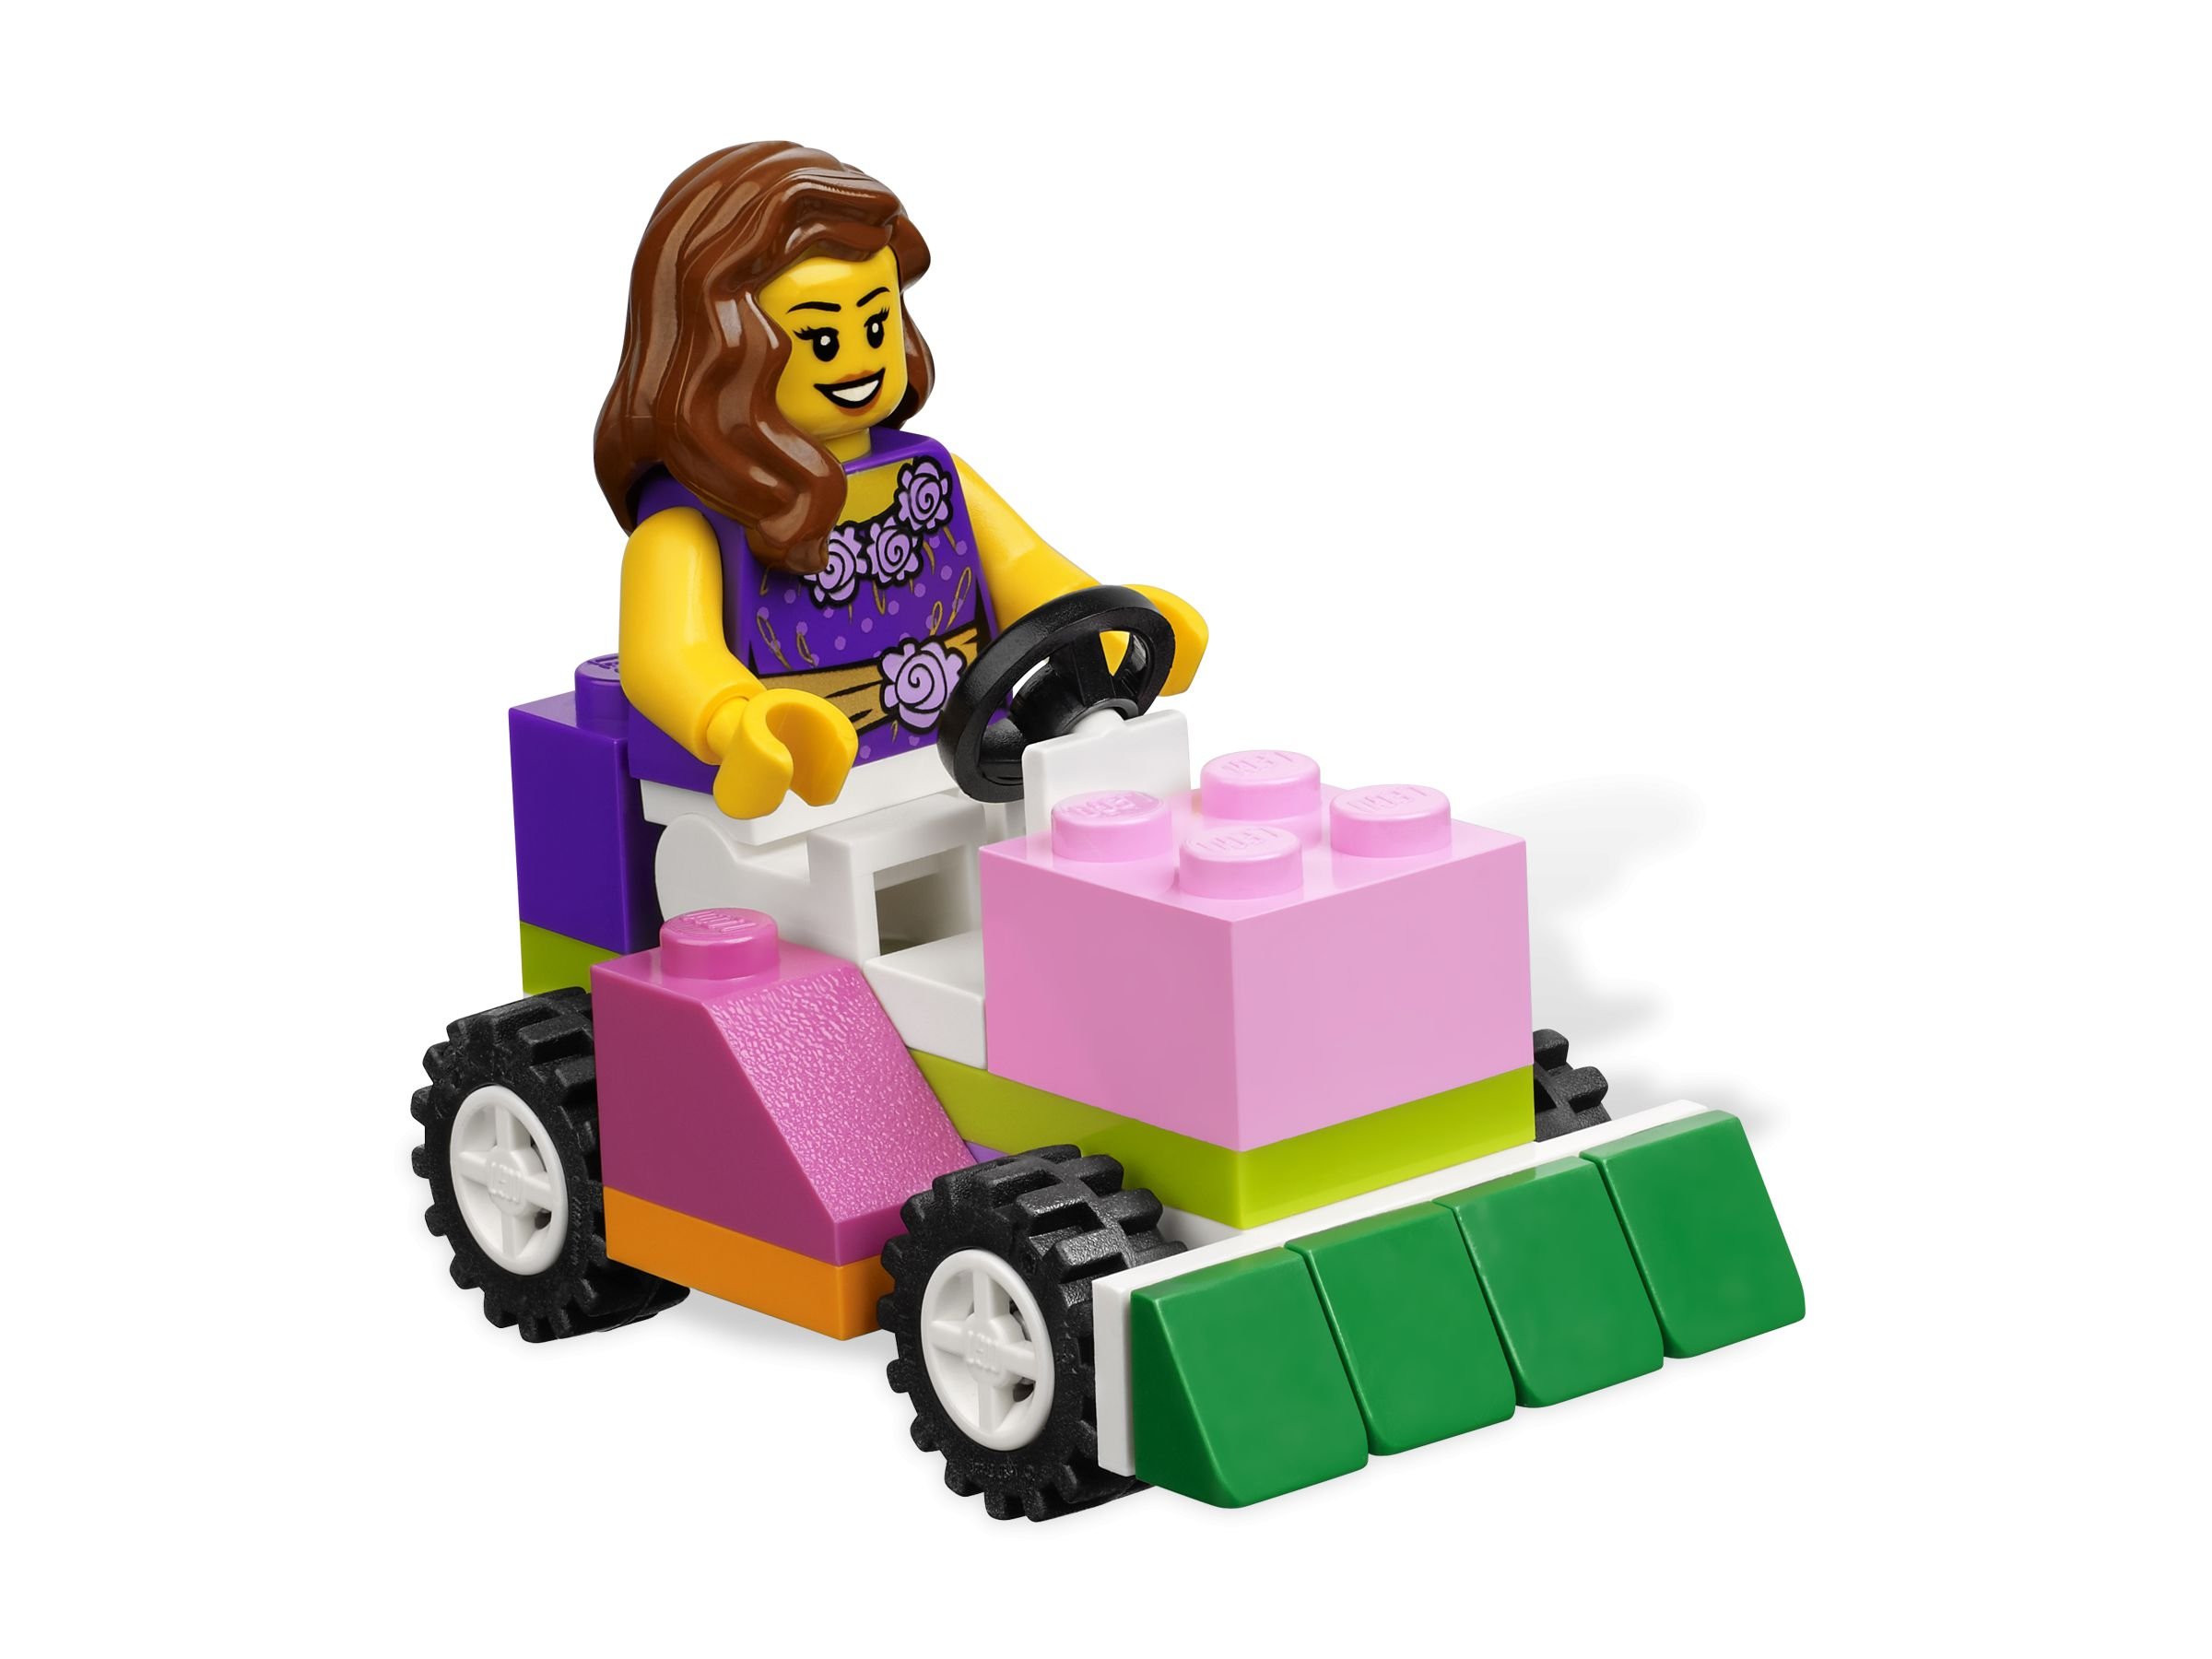 LEGO Bricks and More 4625 Mädchen-Steinebox LEGO_4625_alt4.jpg